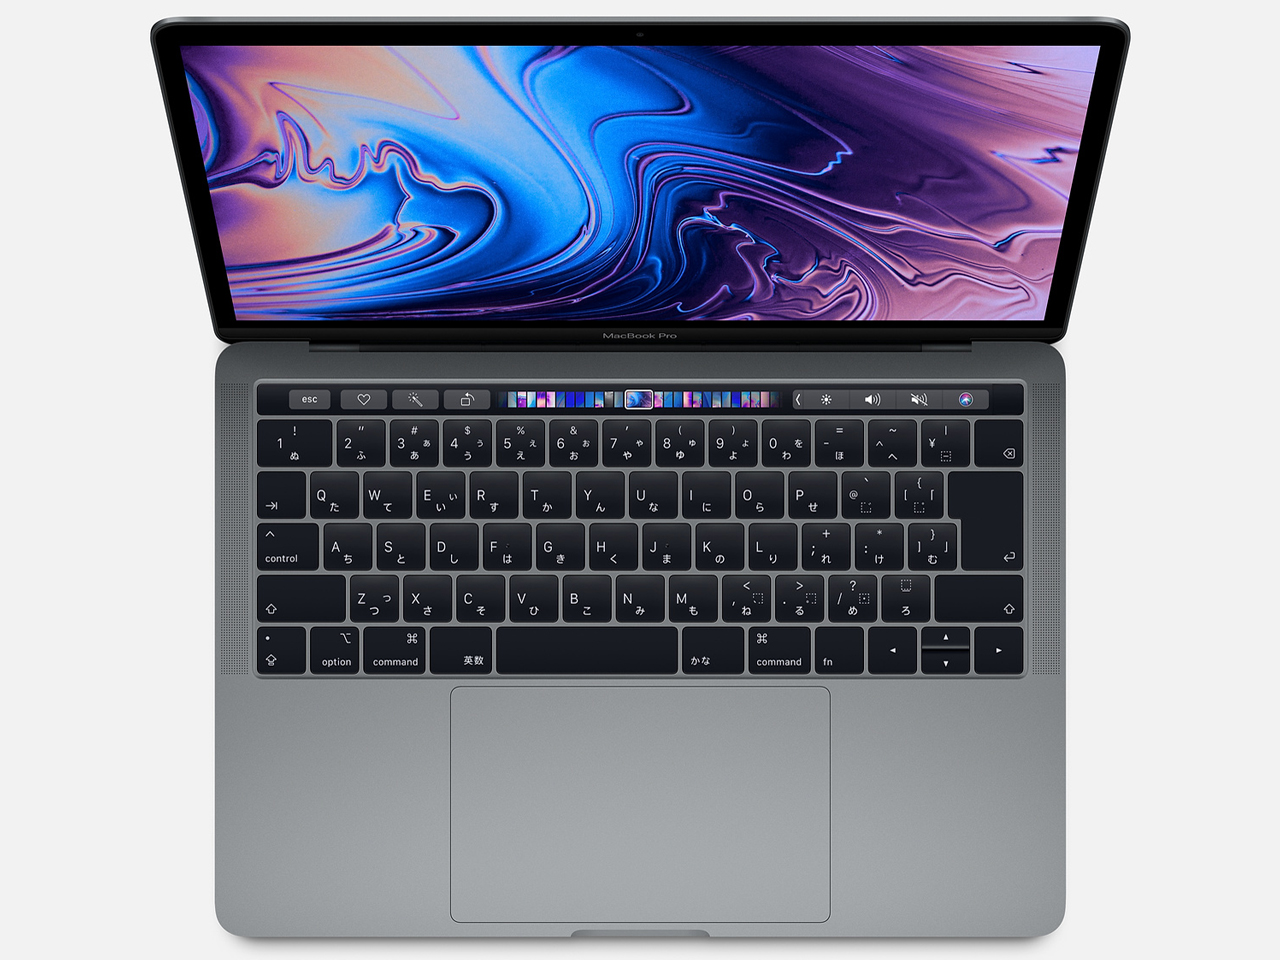 Apple MacBook Pro (13インチ, 第8世代の2.4GHzクアッドコアIntel Core i5プロセッサ, 512GB) - スペースグレイ (最新モデル) Apple(アップル)